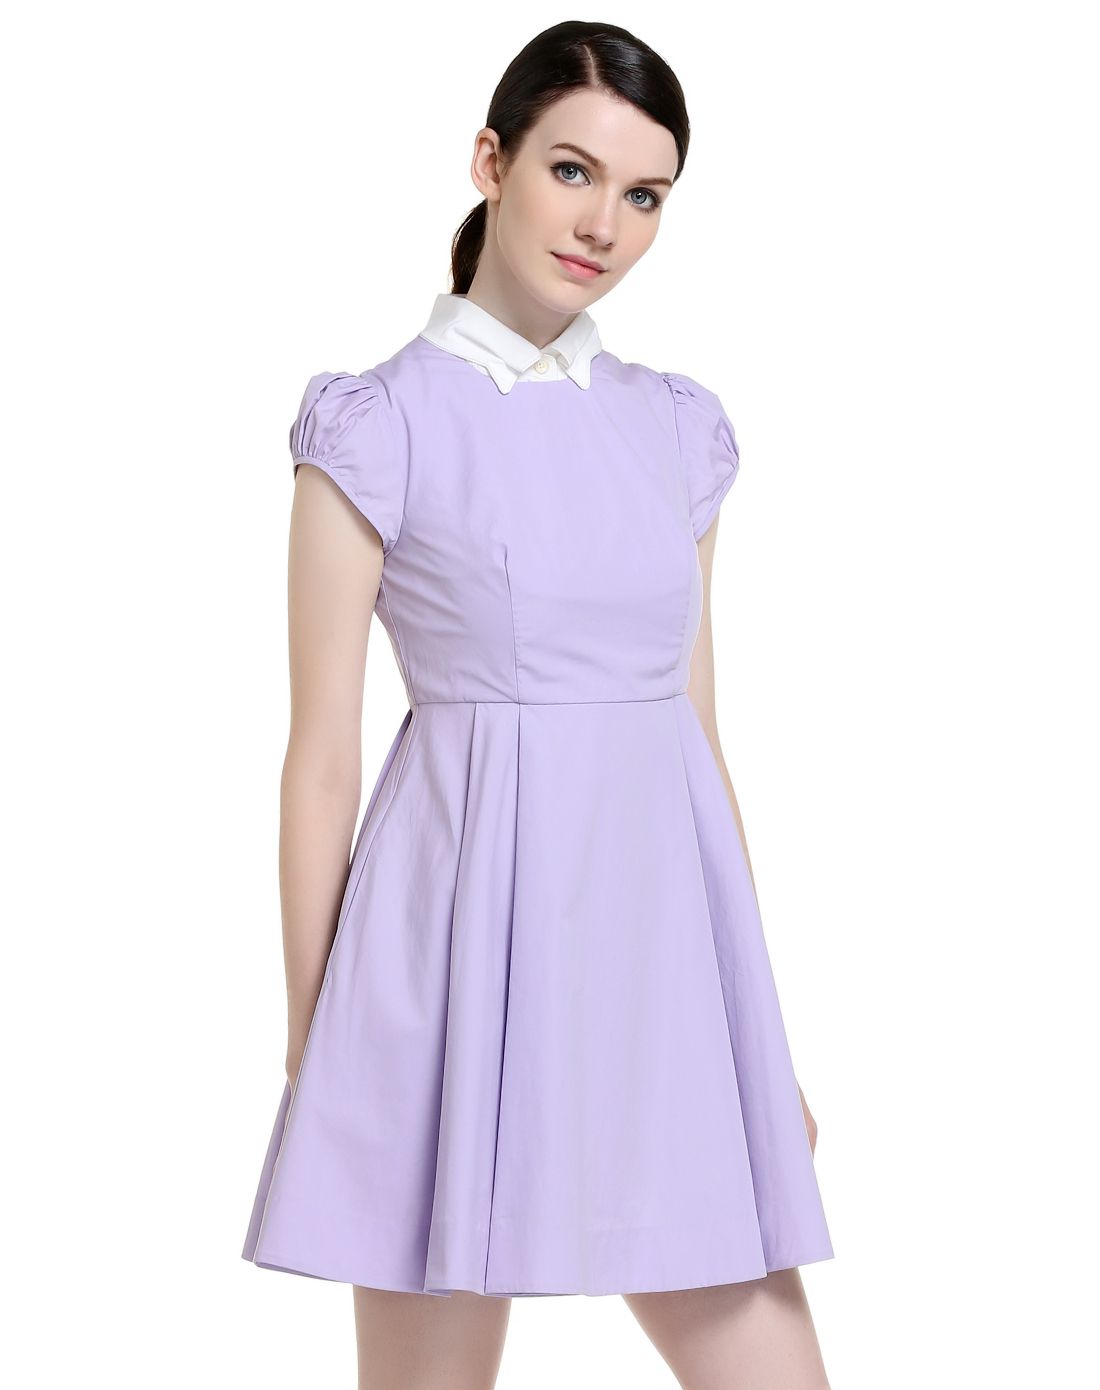 浅紫/白色淑女气质短袖连衣裙